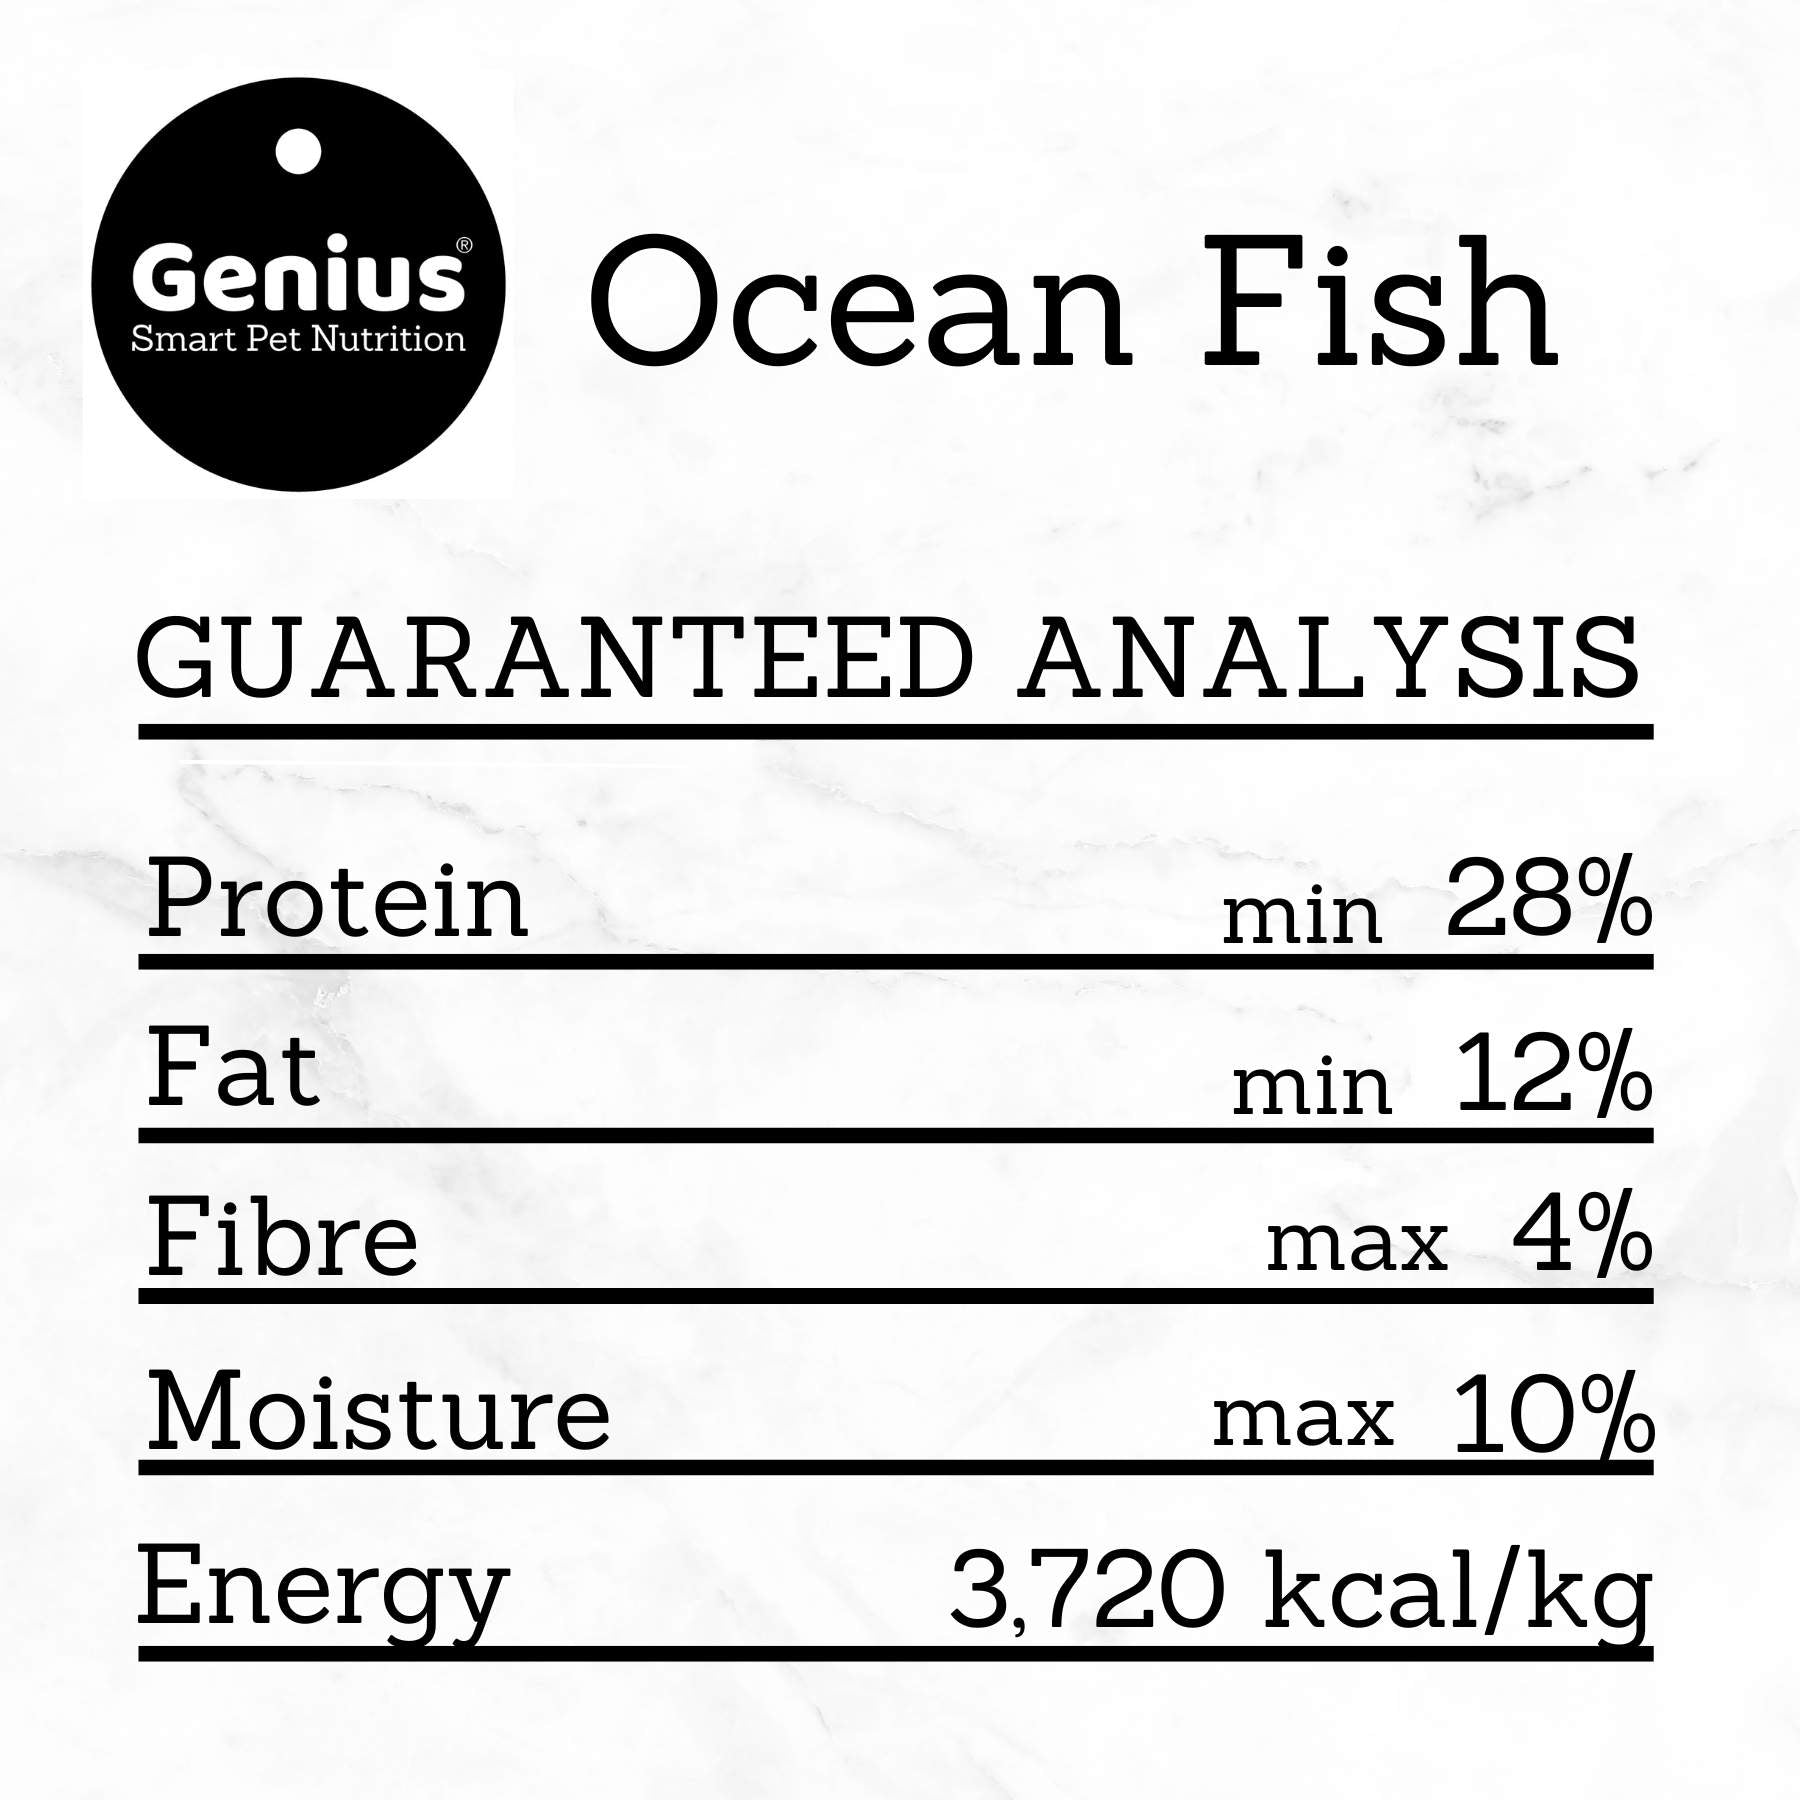 The guaranteed analysis chart of Genius Ocean Fish dog food sample